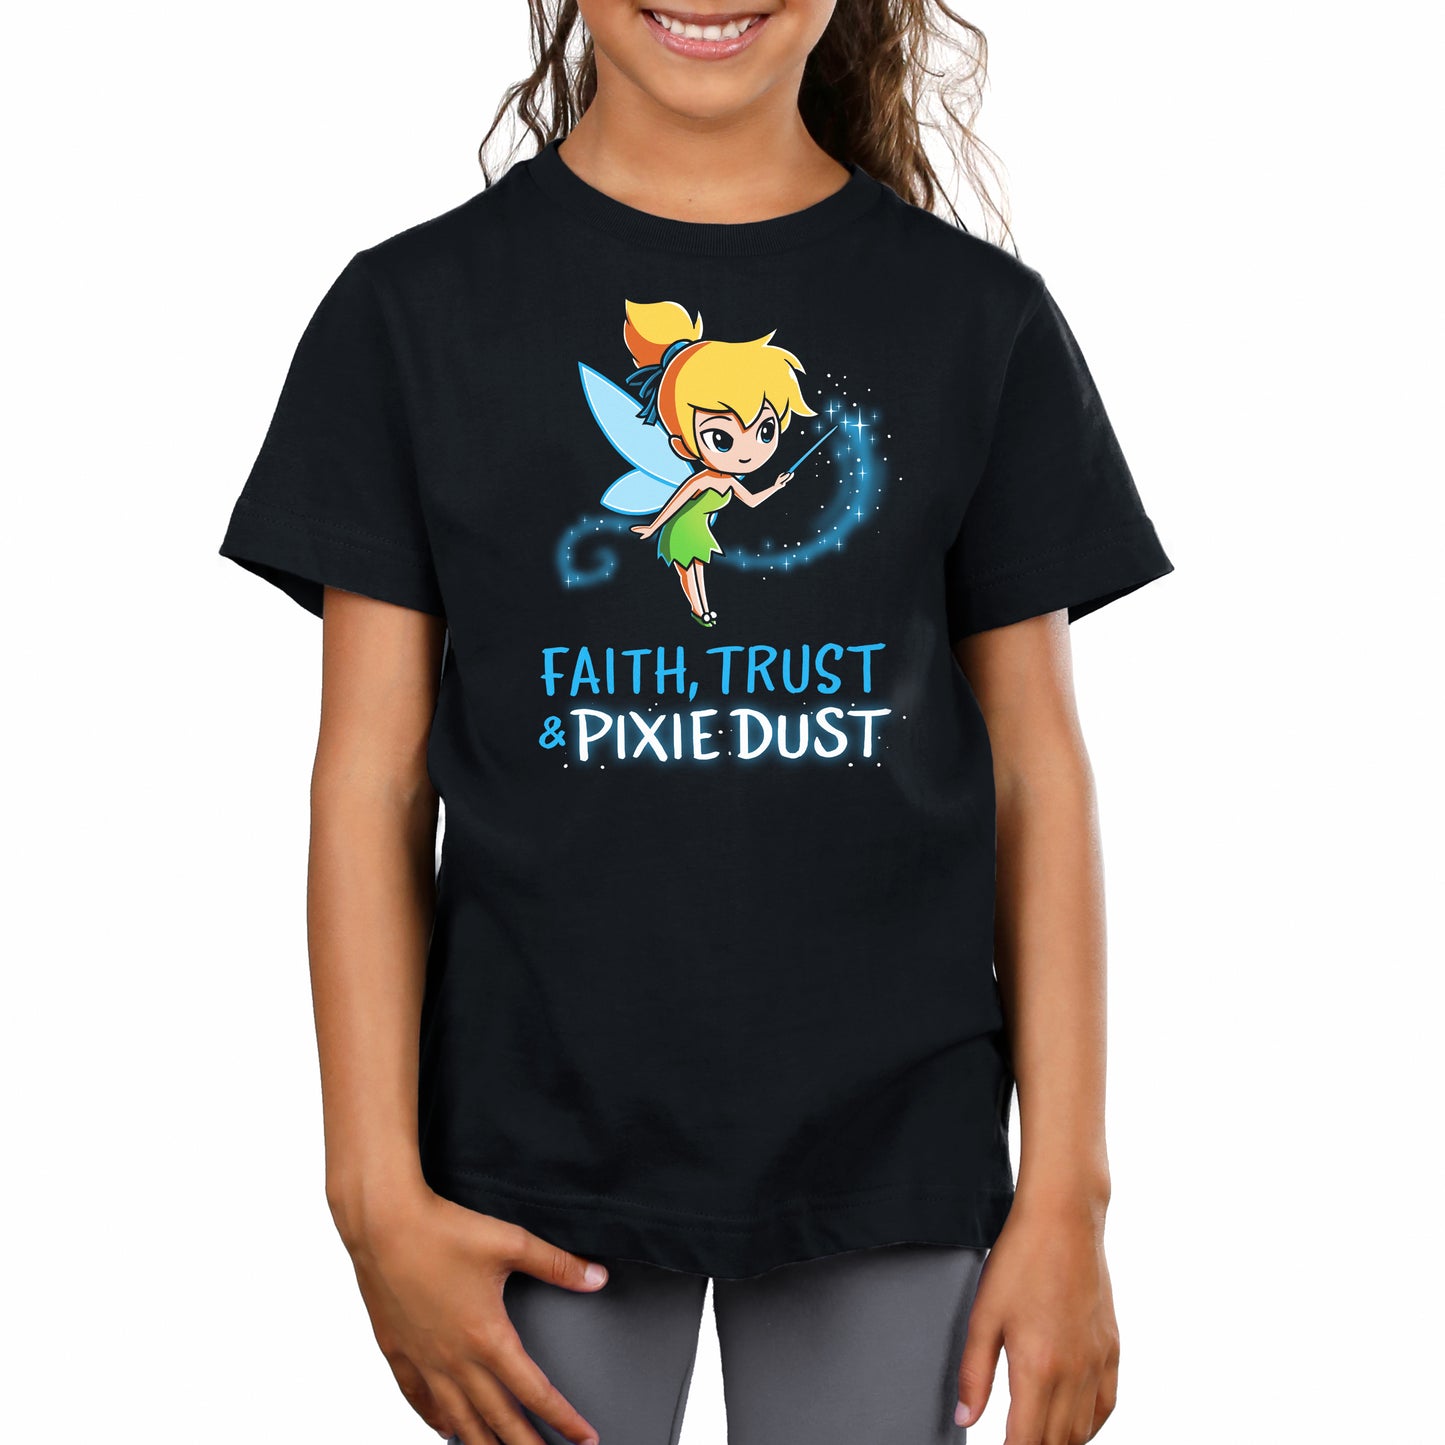 Faith, Trust & Pixie Dust super soft kids t-shirt by Disney.